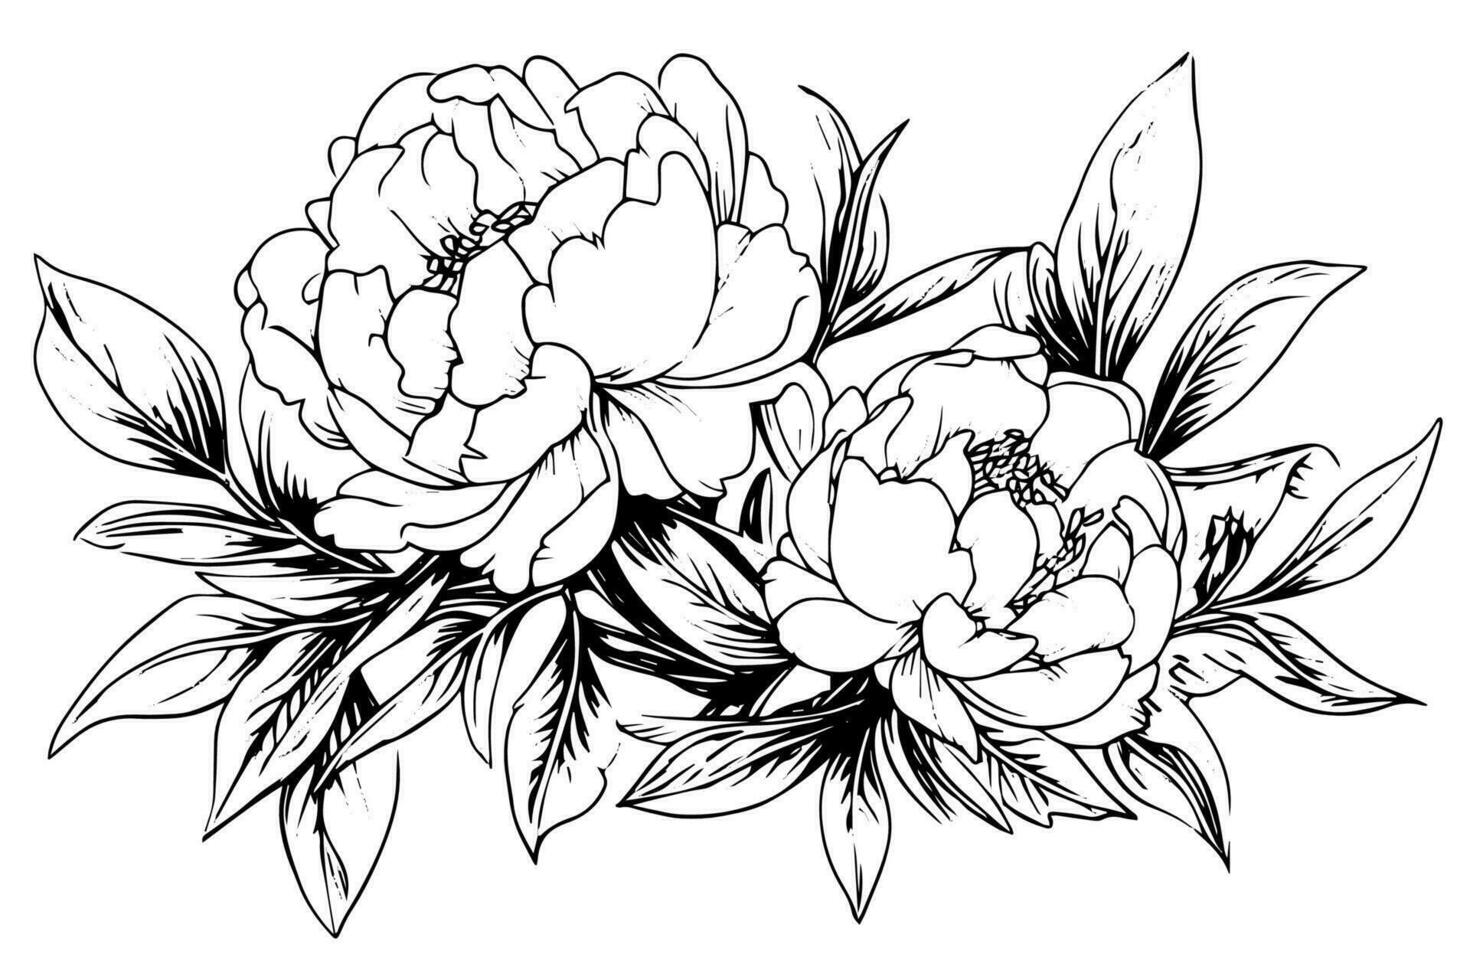 pion blomma och löv teckning. vektor hand dragen graverat bläck illustration